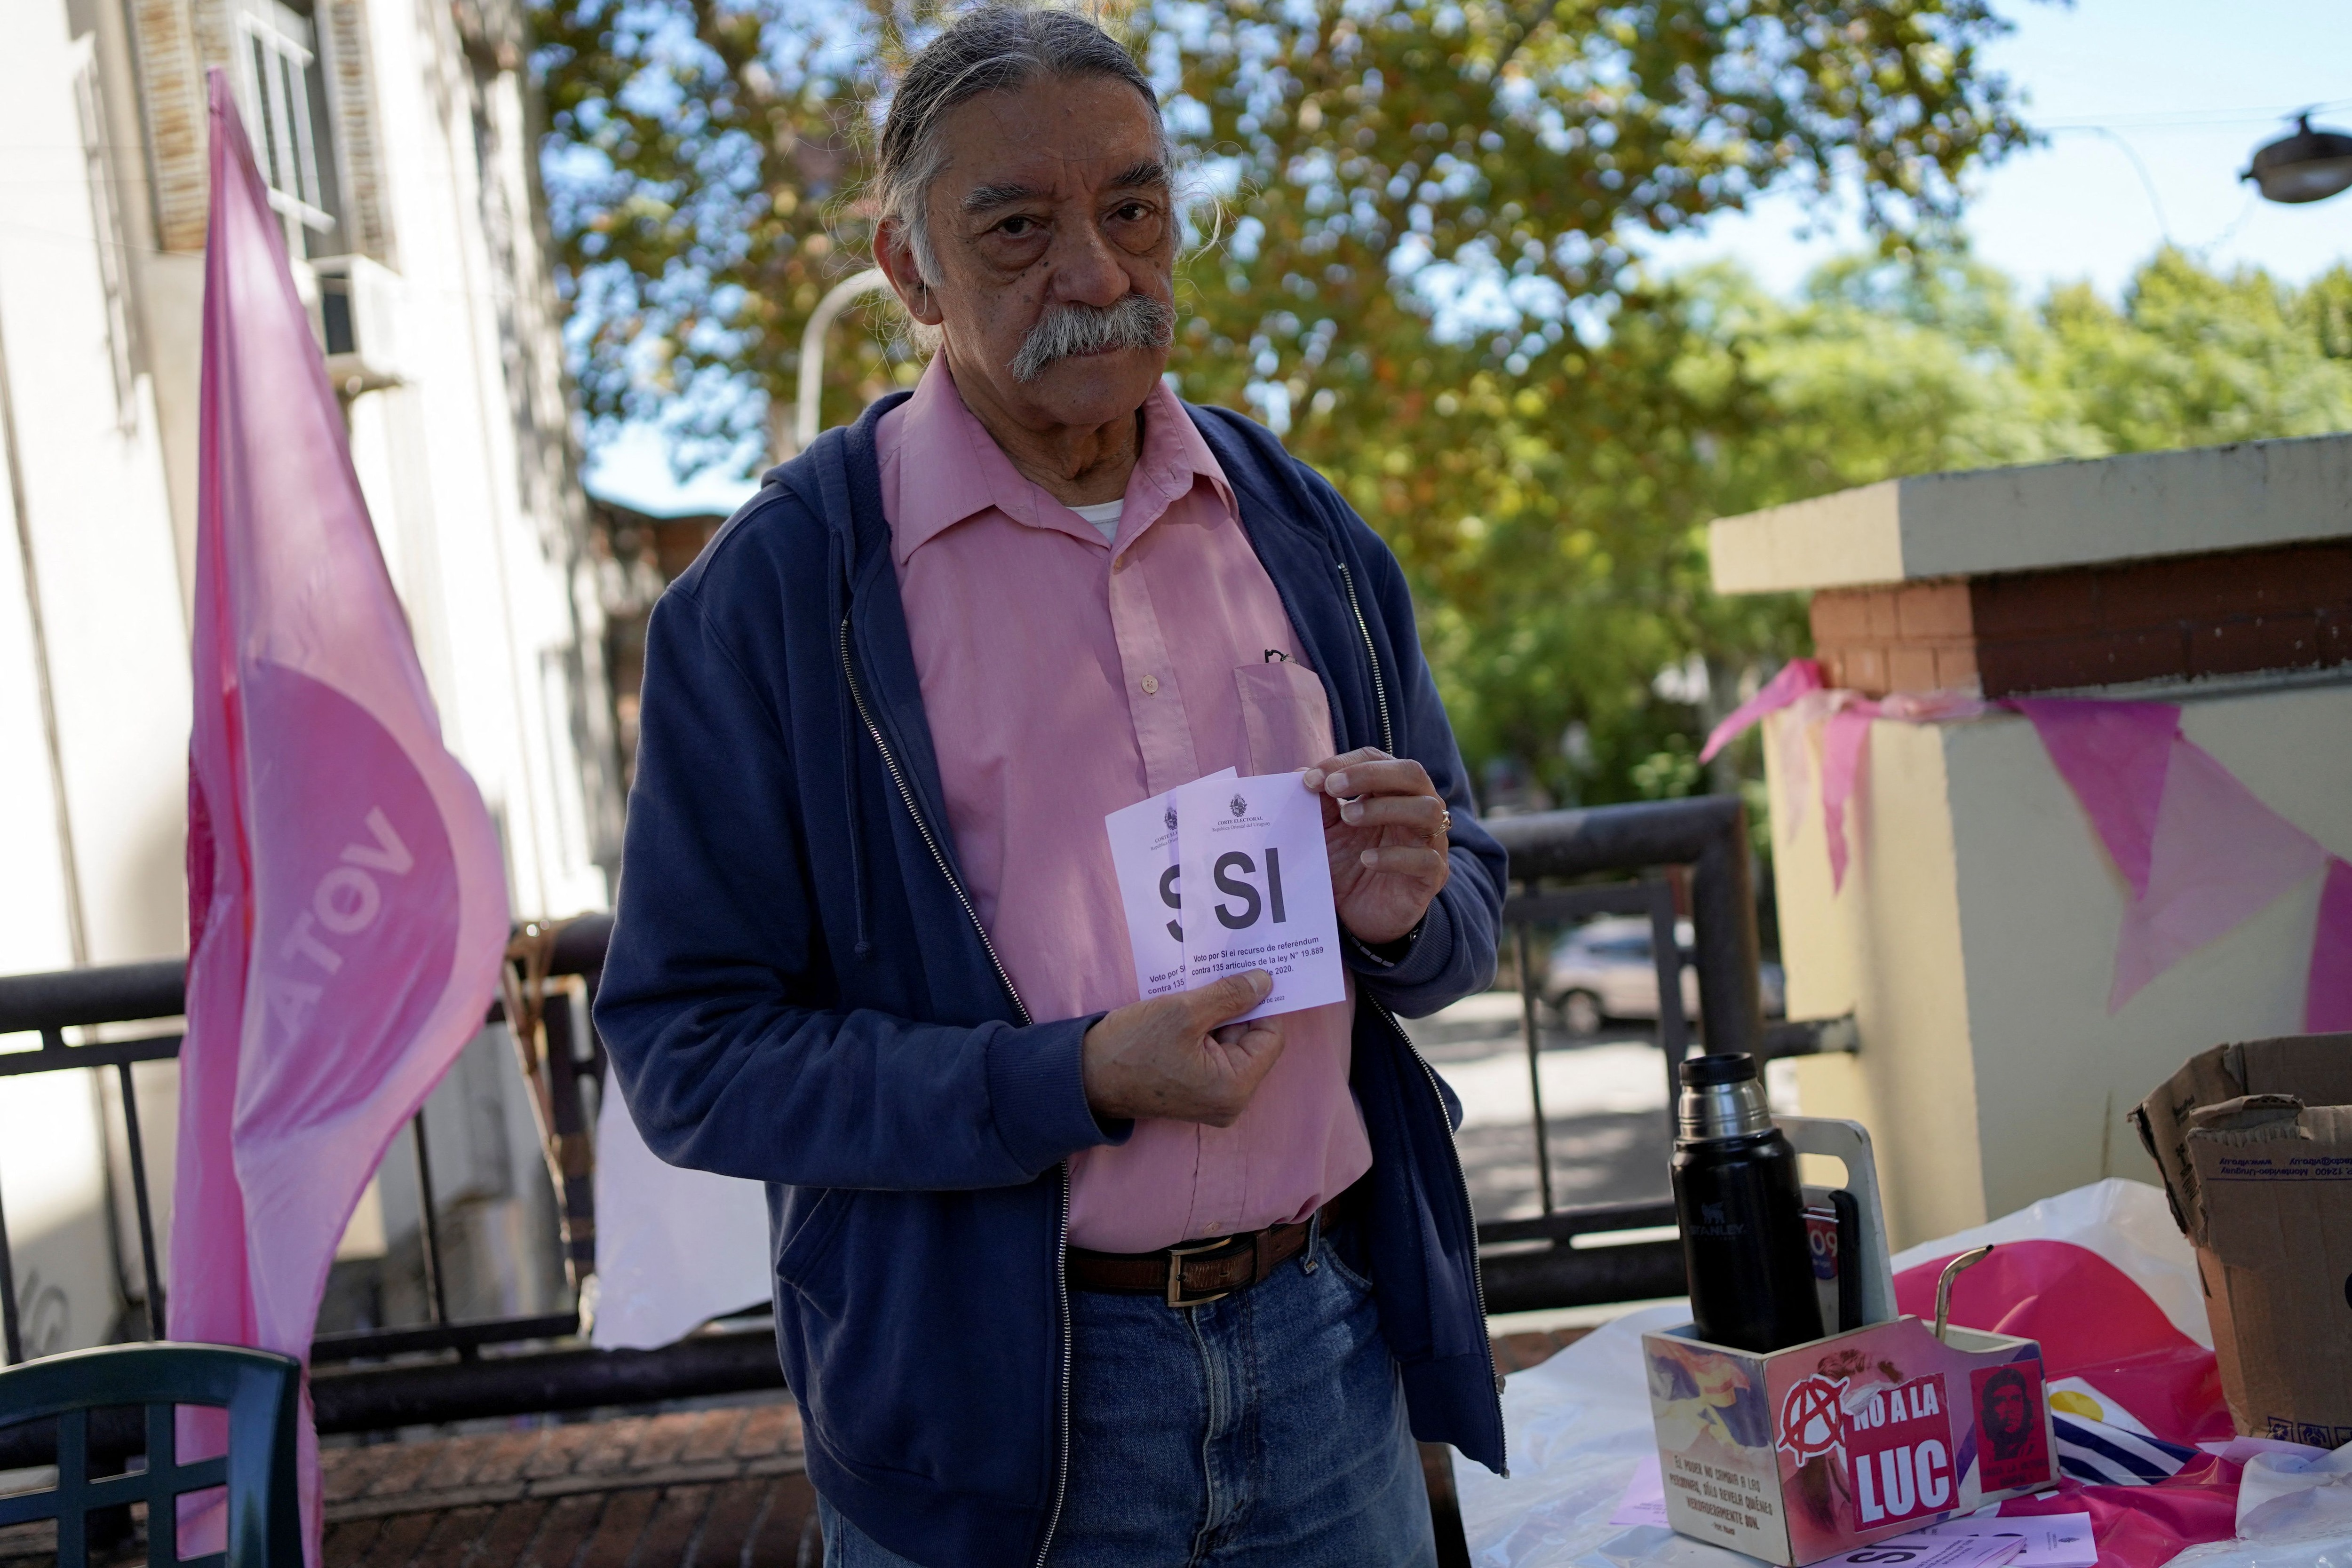 Un voluntari de la mesa electoral sostiene las papeletas rosas del 'Sí' para un referéndum sobre la eliminación o no de 135 artículos de la Ley de Consideración Urgente, fuera de un colegio electoral en Montevideo, Uruguay el 27 de marzo de 2022. REUTERS